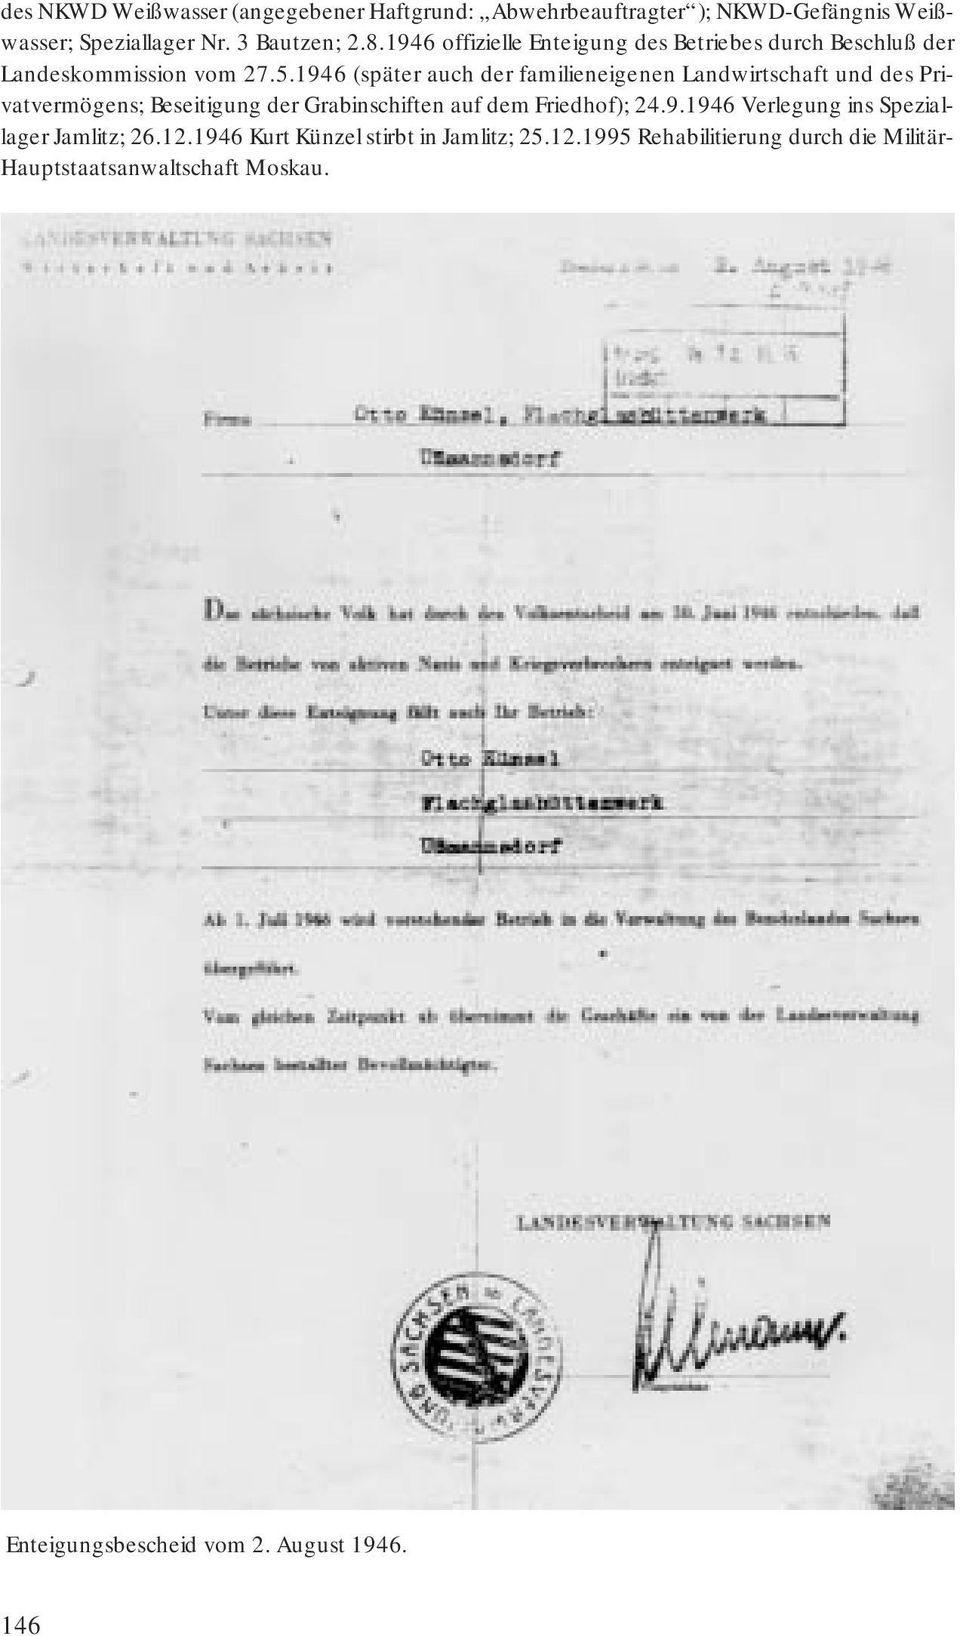 1946 (später auch der familieneigenen Landwirtschaft und des Privatvermögens; Beseitigung der Grabinschiften auf dem Friedhof); 24.9.1946 Verlegung ins Speziallager Jamlitz; 26.